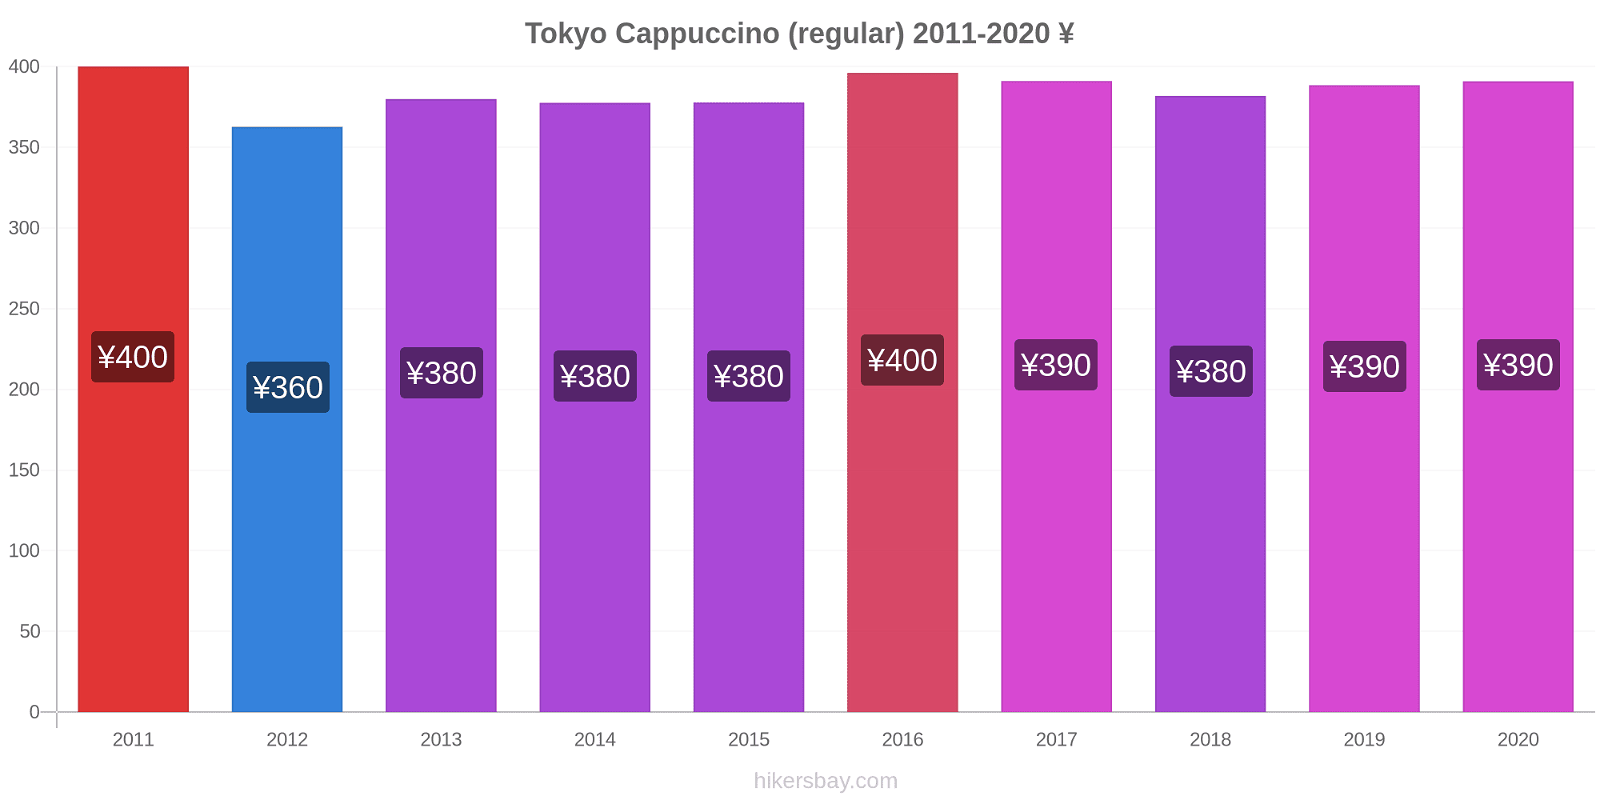 Tokyo price changes Cappuccino (regular) hikersbay.com